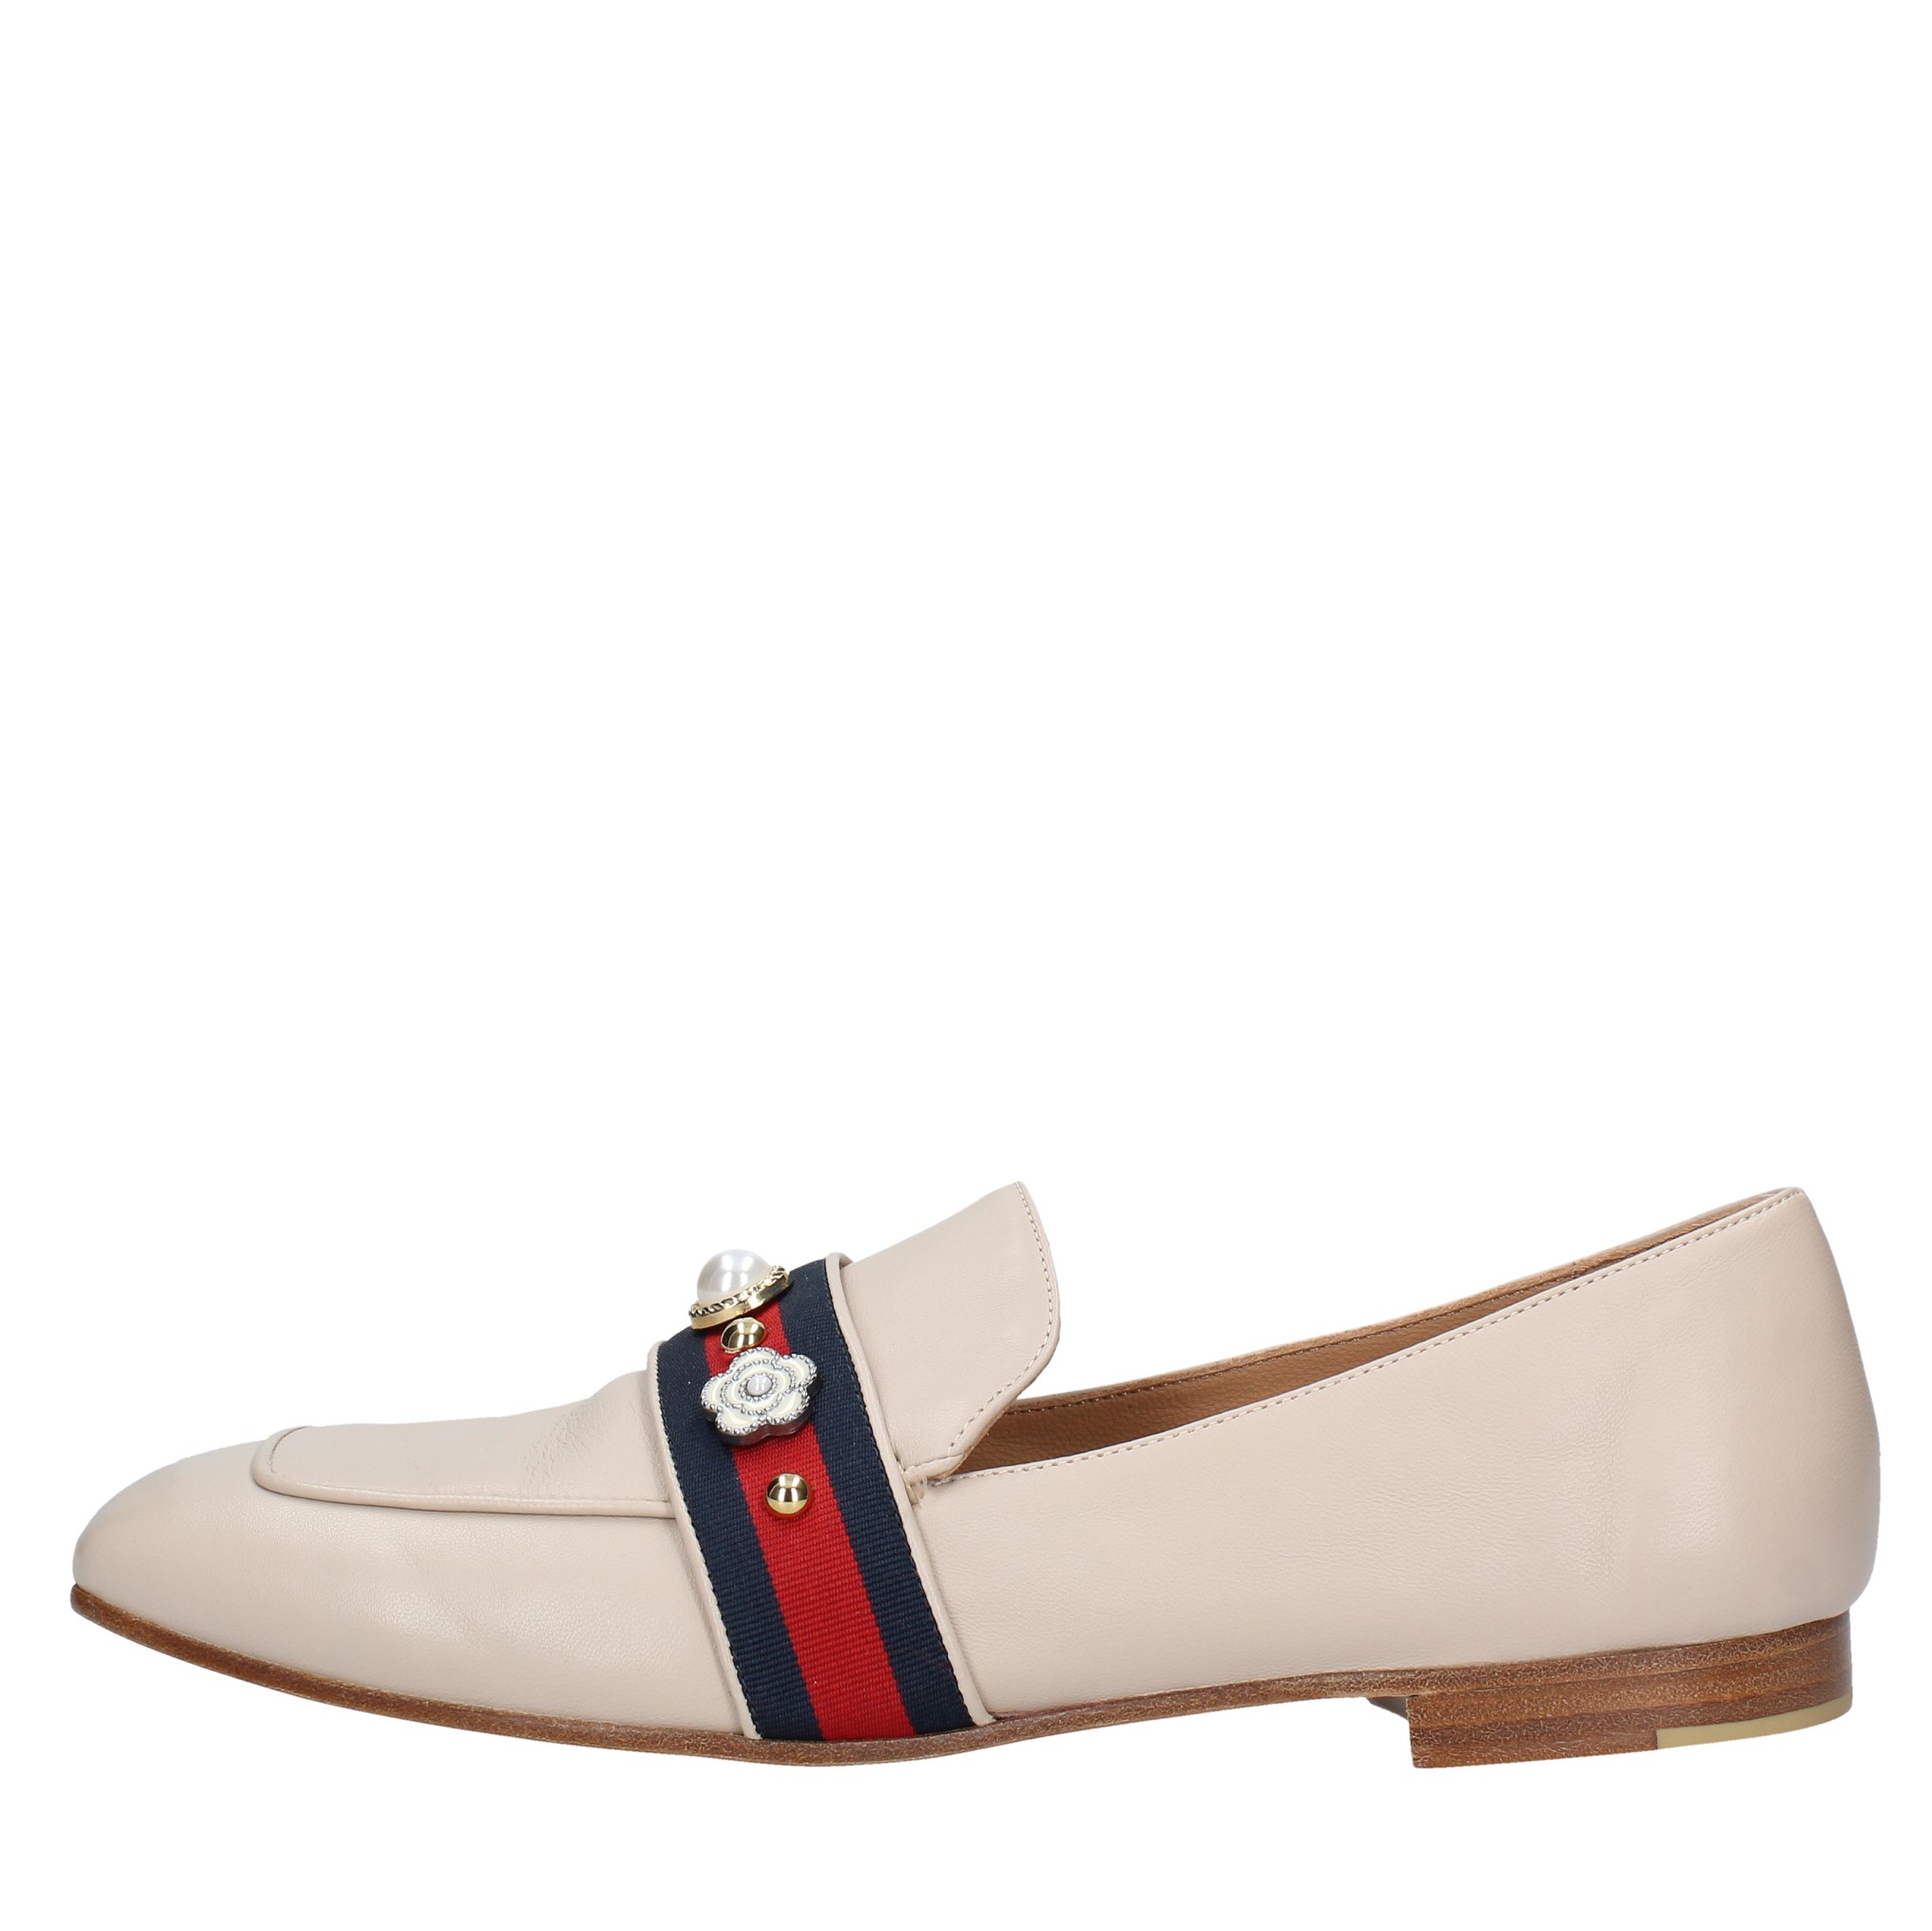 Loafers and slip-ons Beige - MARA BINI - Ginevra calzature